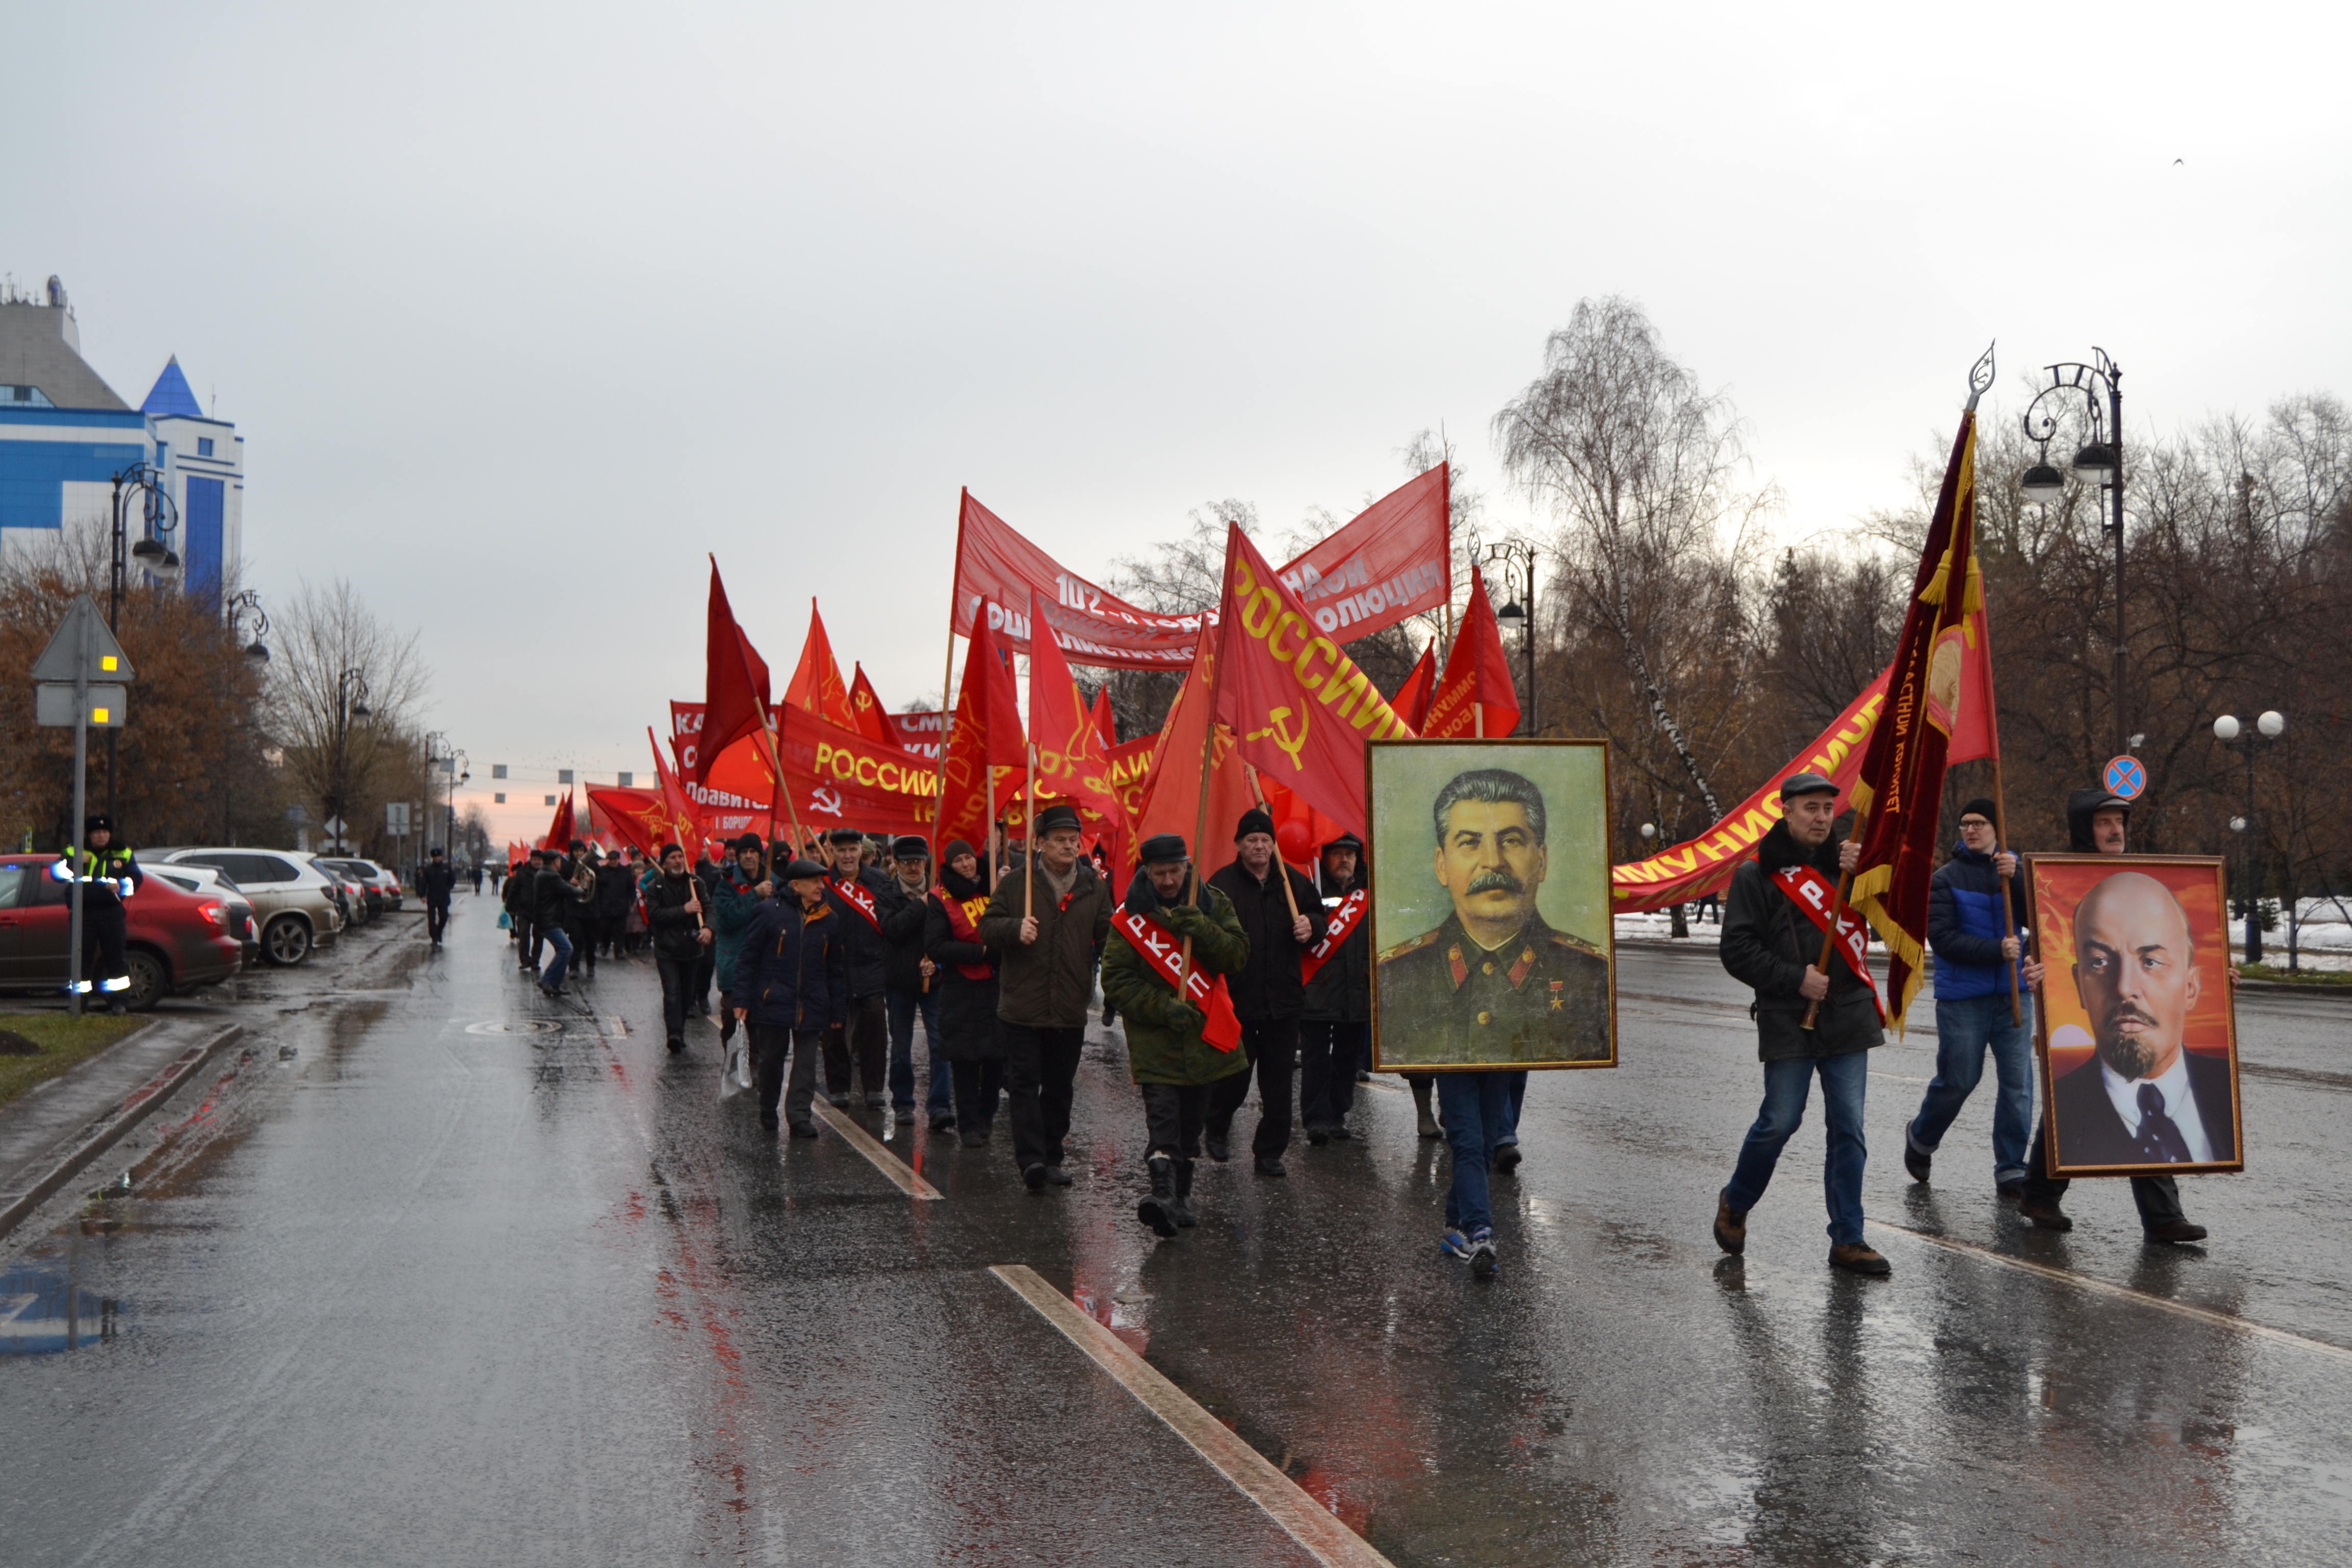 Тюменские коммунисты провели шествие в центре Тюмени